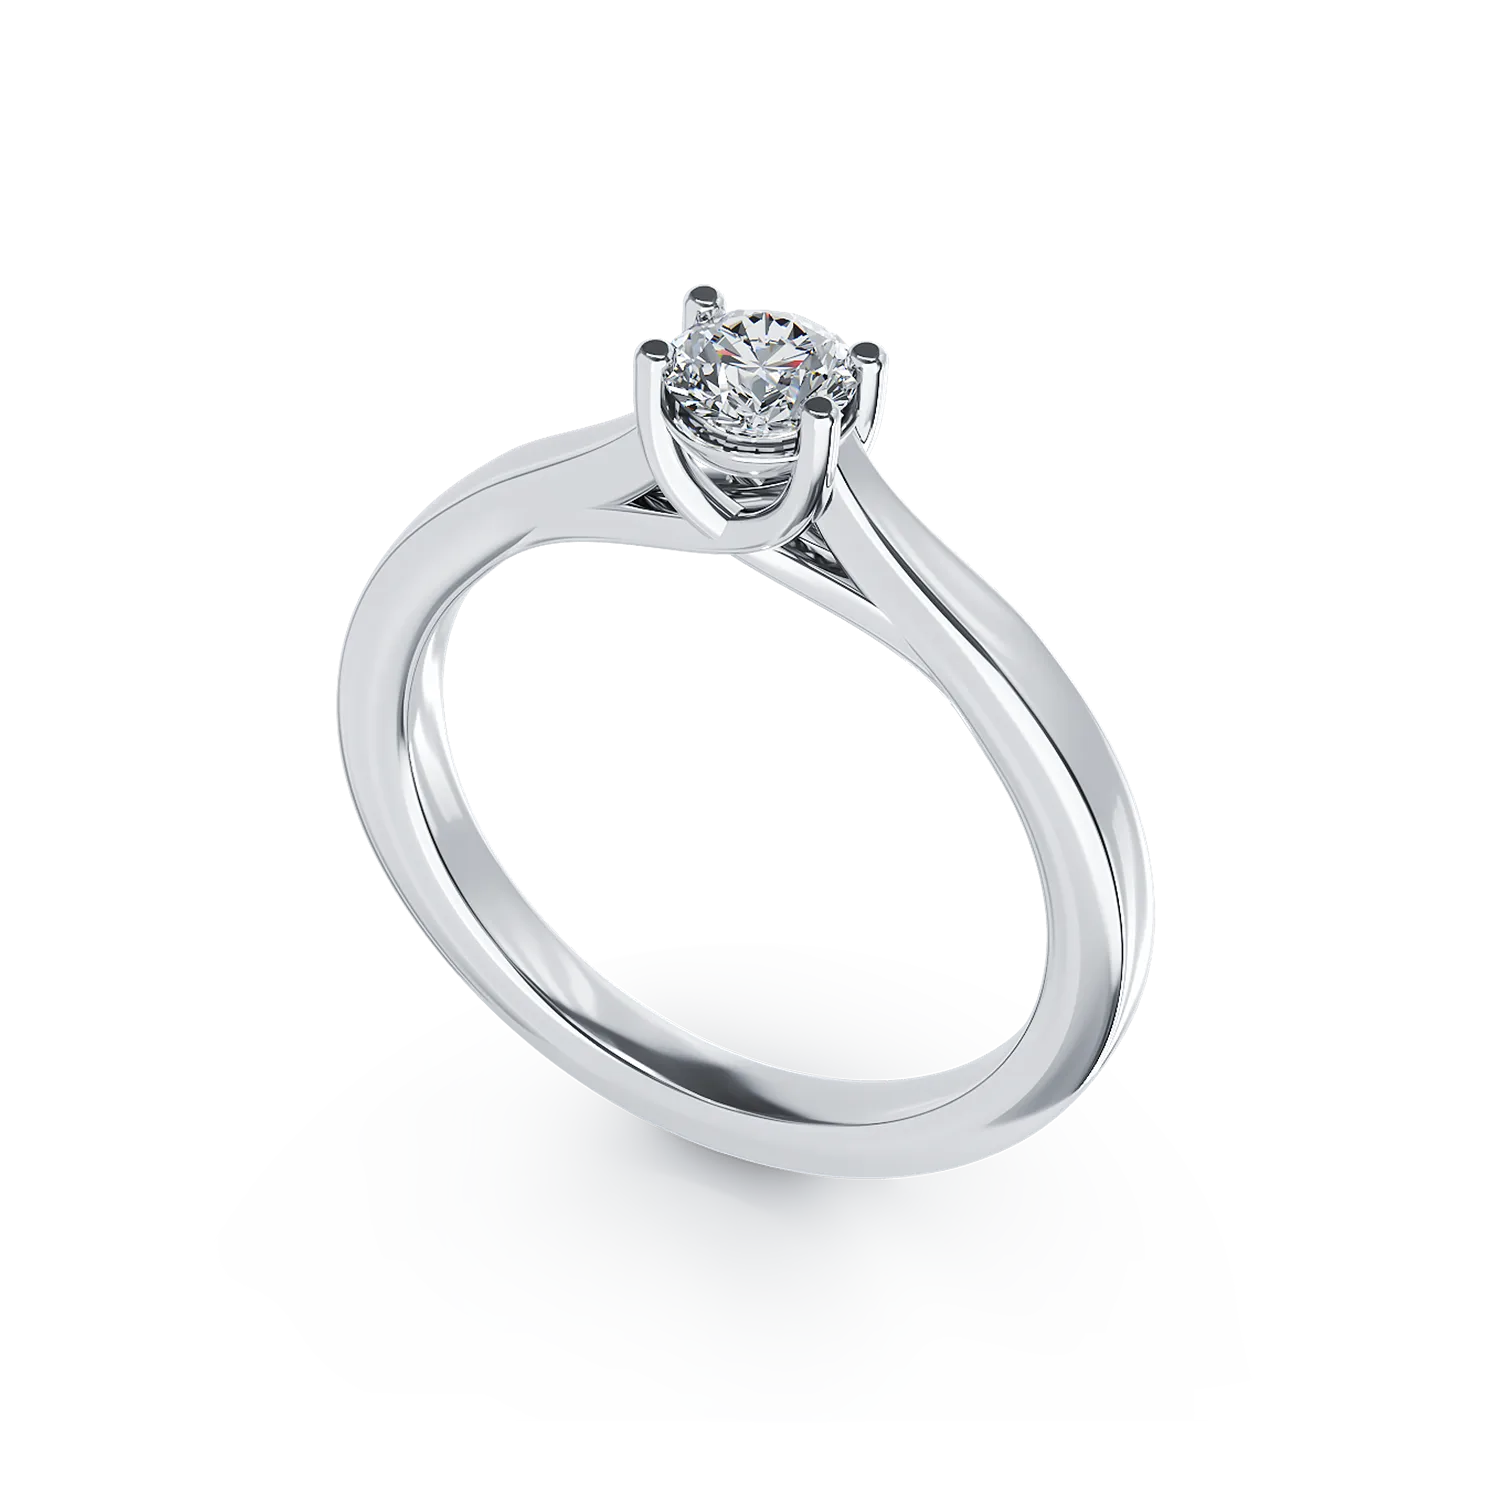 Inel de logodna din aur alb de 18K cu un diamant solitaire de 0.15ct